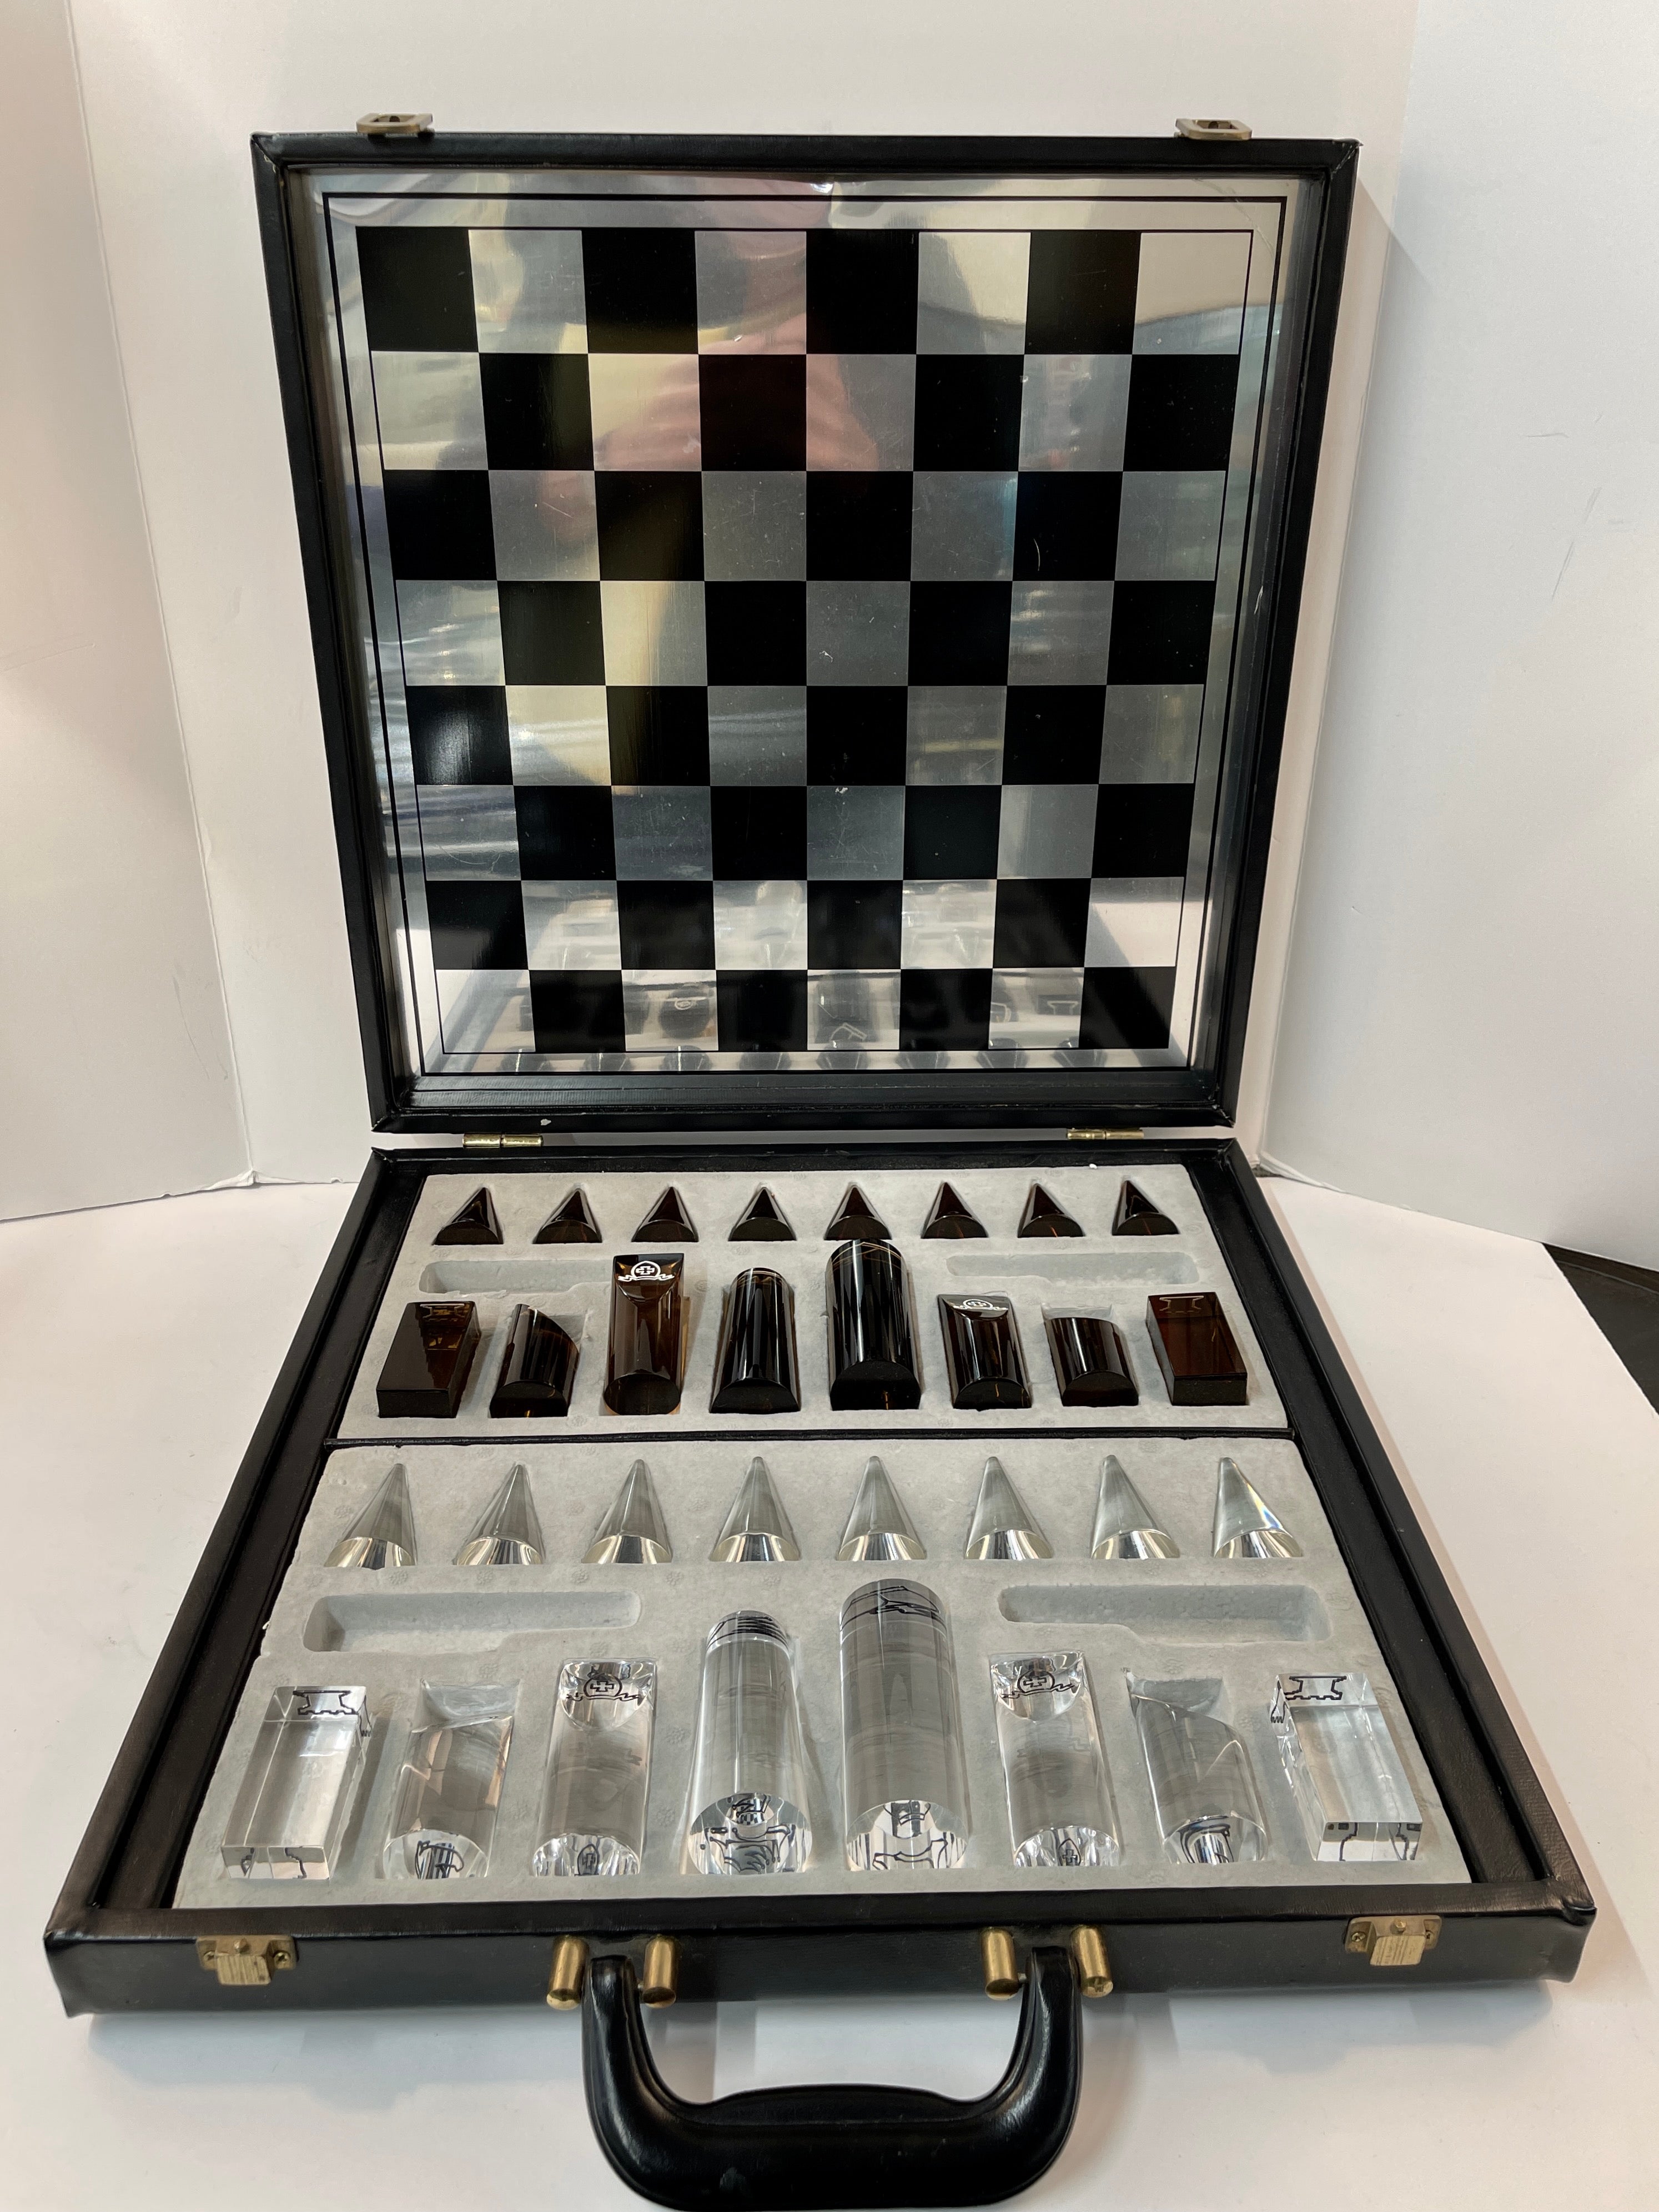 Chaturanga Chess Table by Hillsideout - Rossana Orlandi